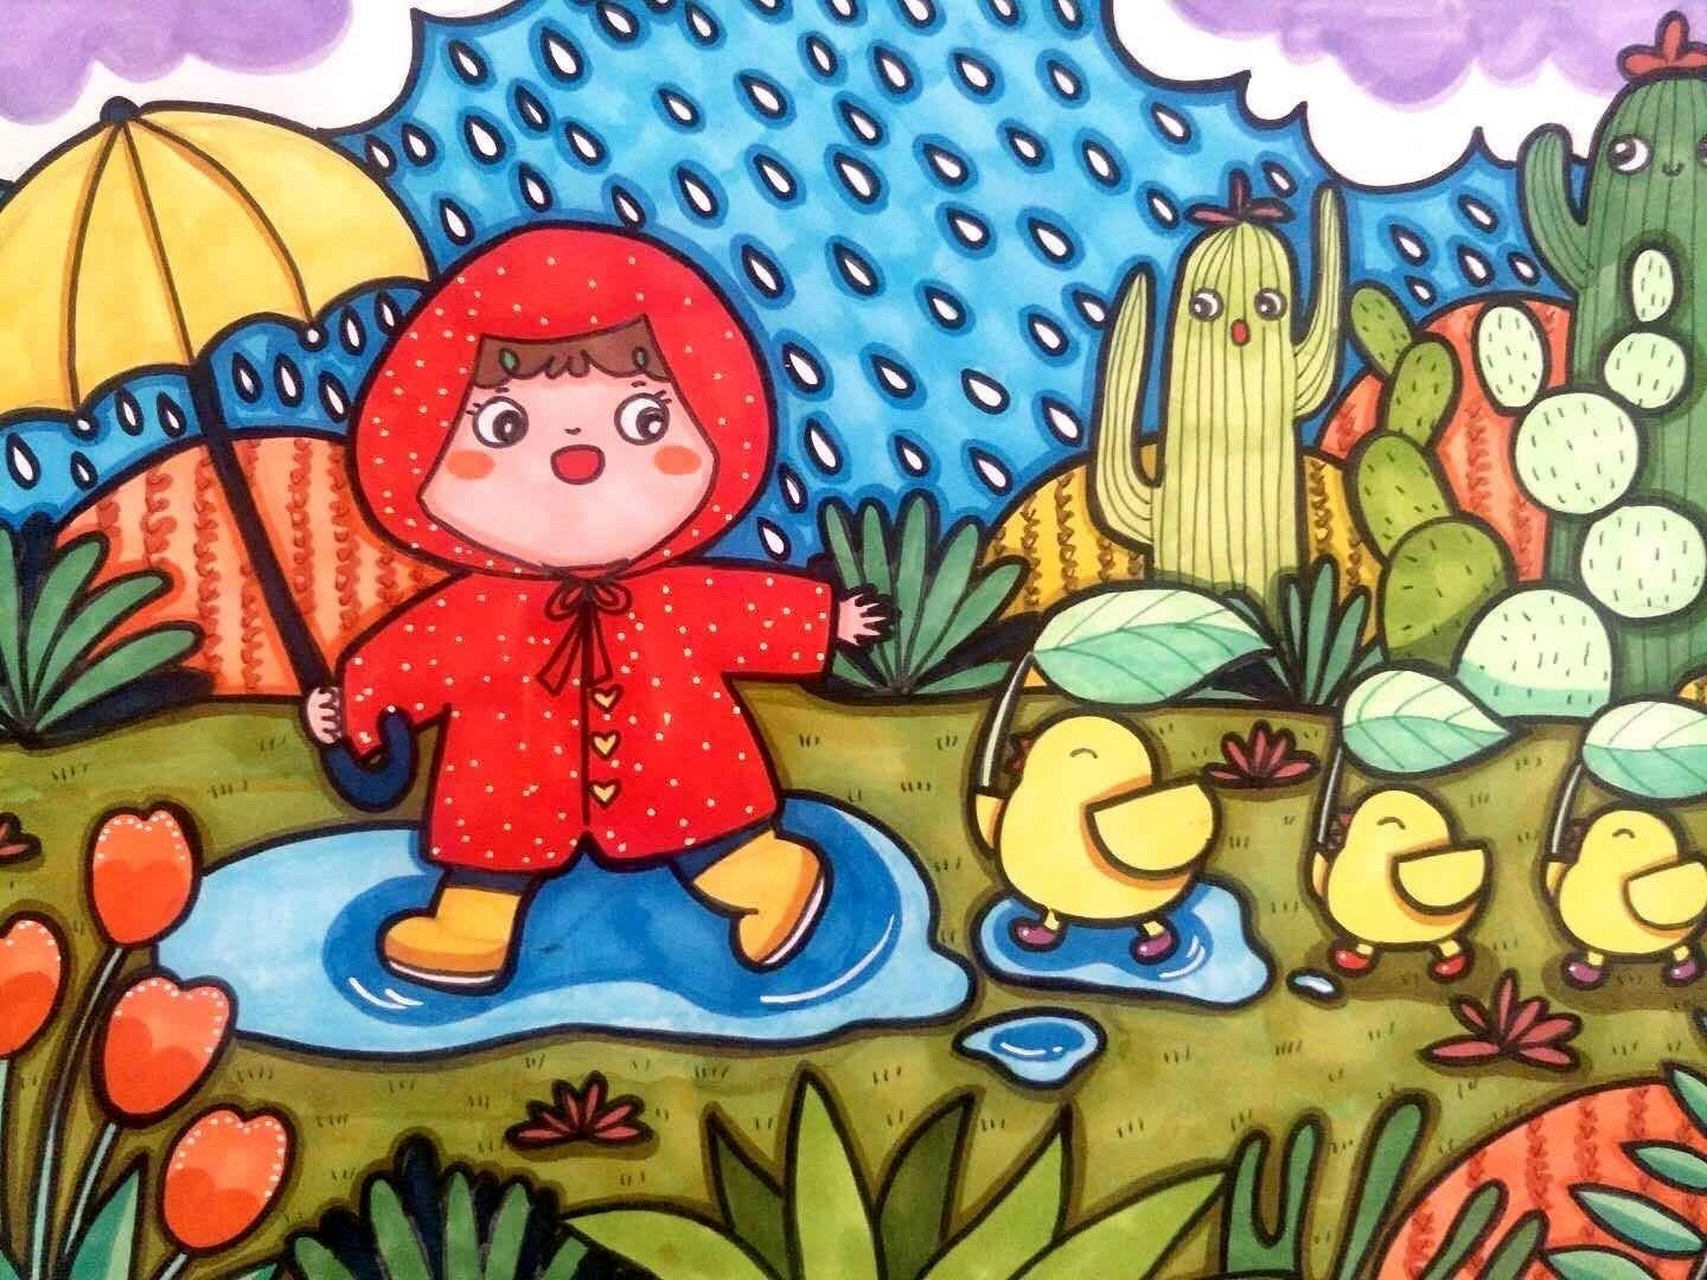 (原创)下雨天儿童简笔画 下雨天,空气格外好,要来一起散散步吗?